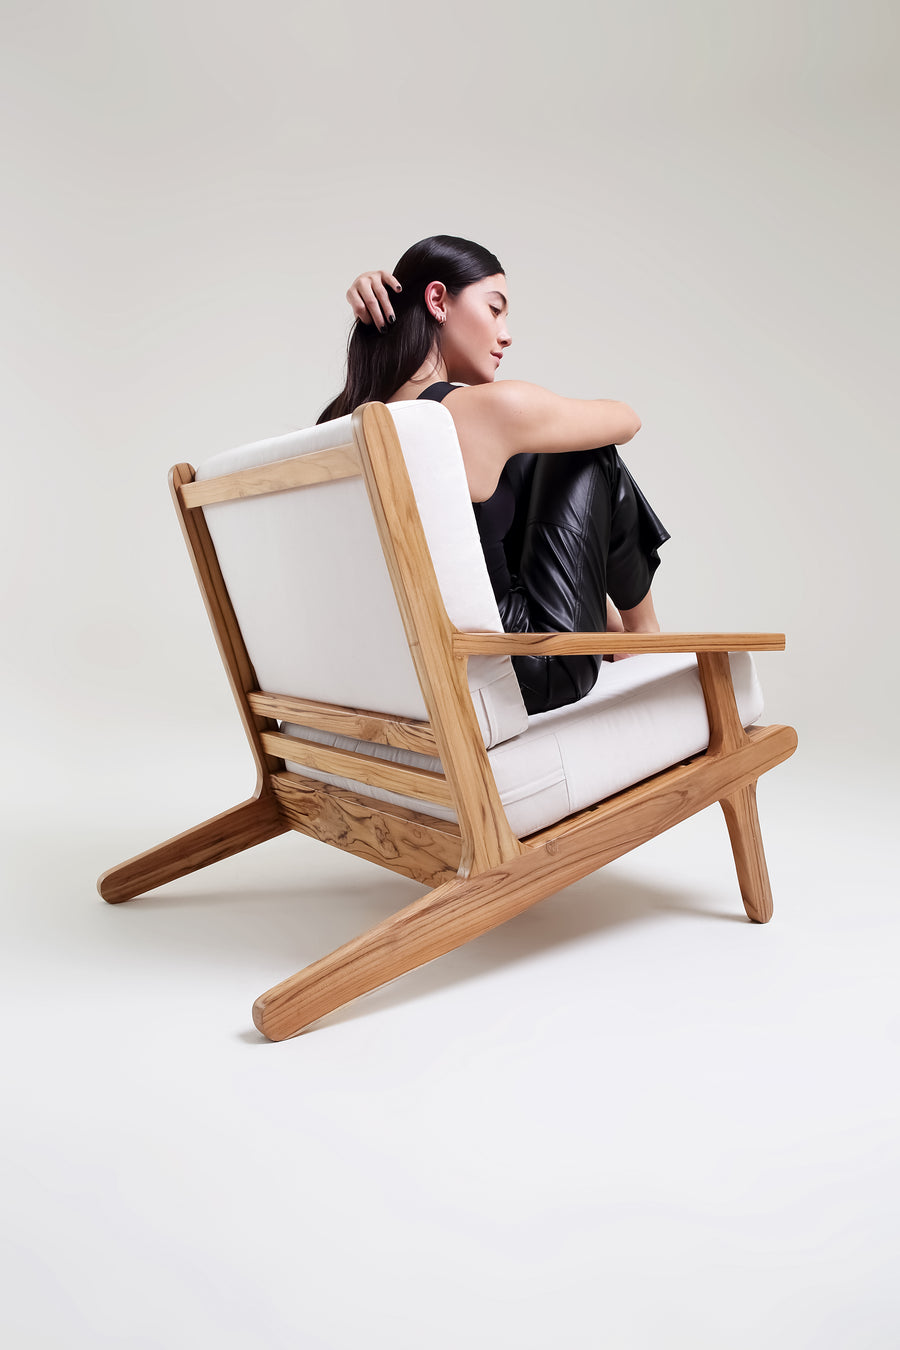 MONTANA - Lounge chair